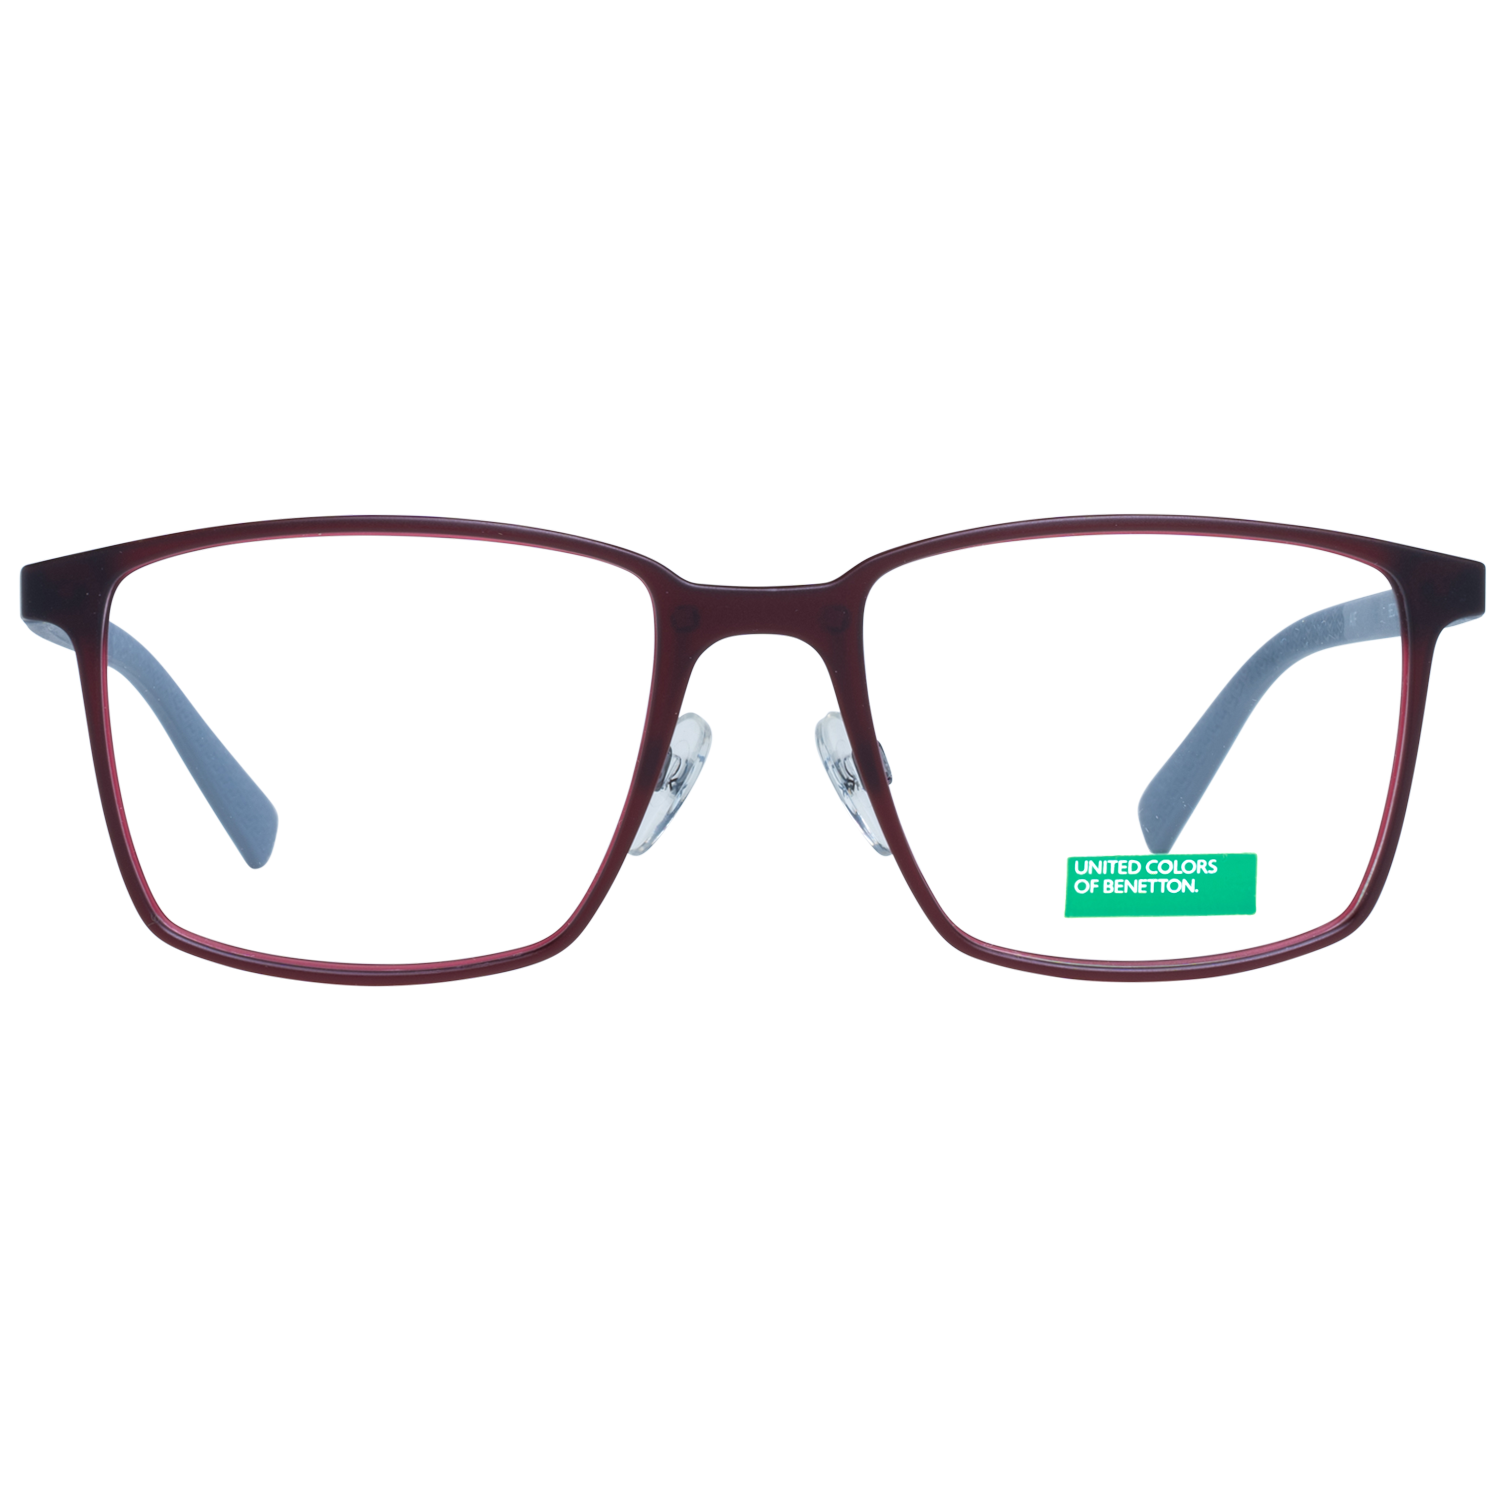 Benetton Frames Benetton Glasses Frames BEO1009 252 53 Eyeglasses Eyewear UK USA Australia 